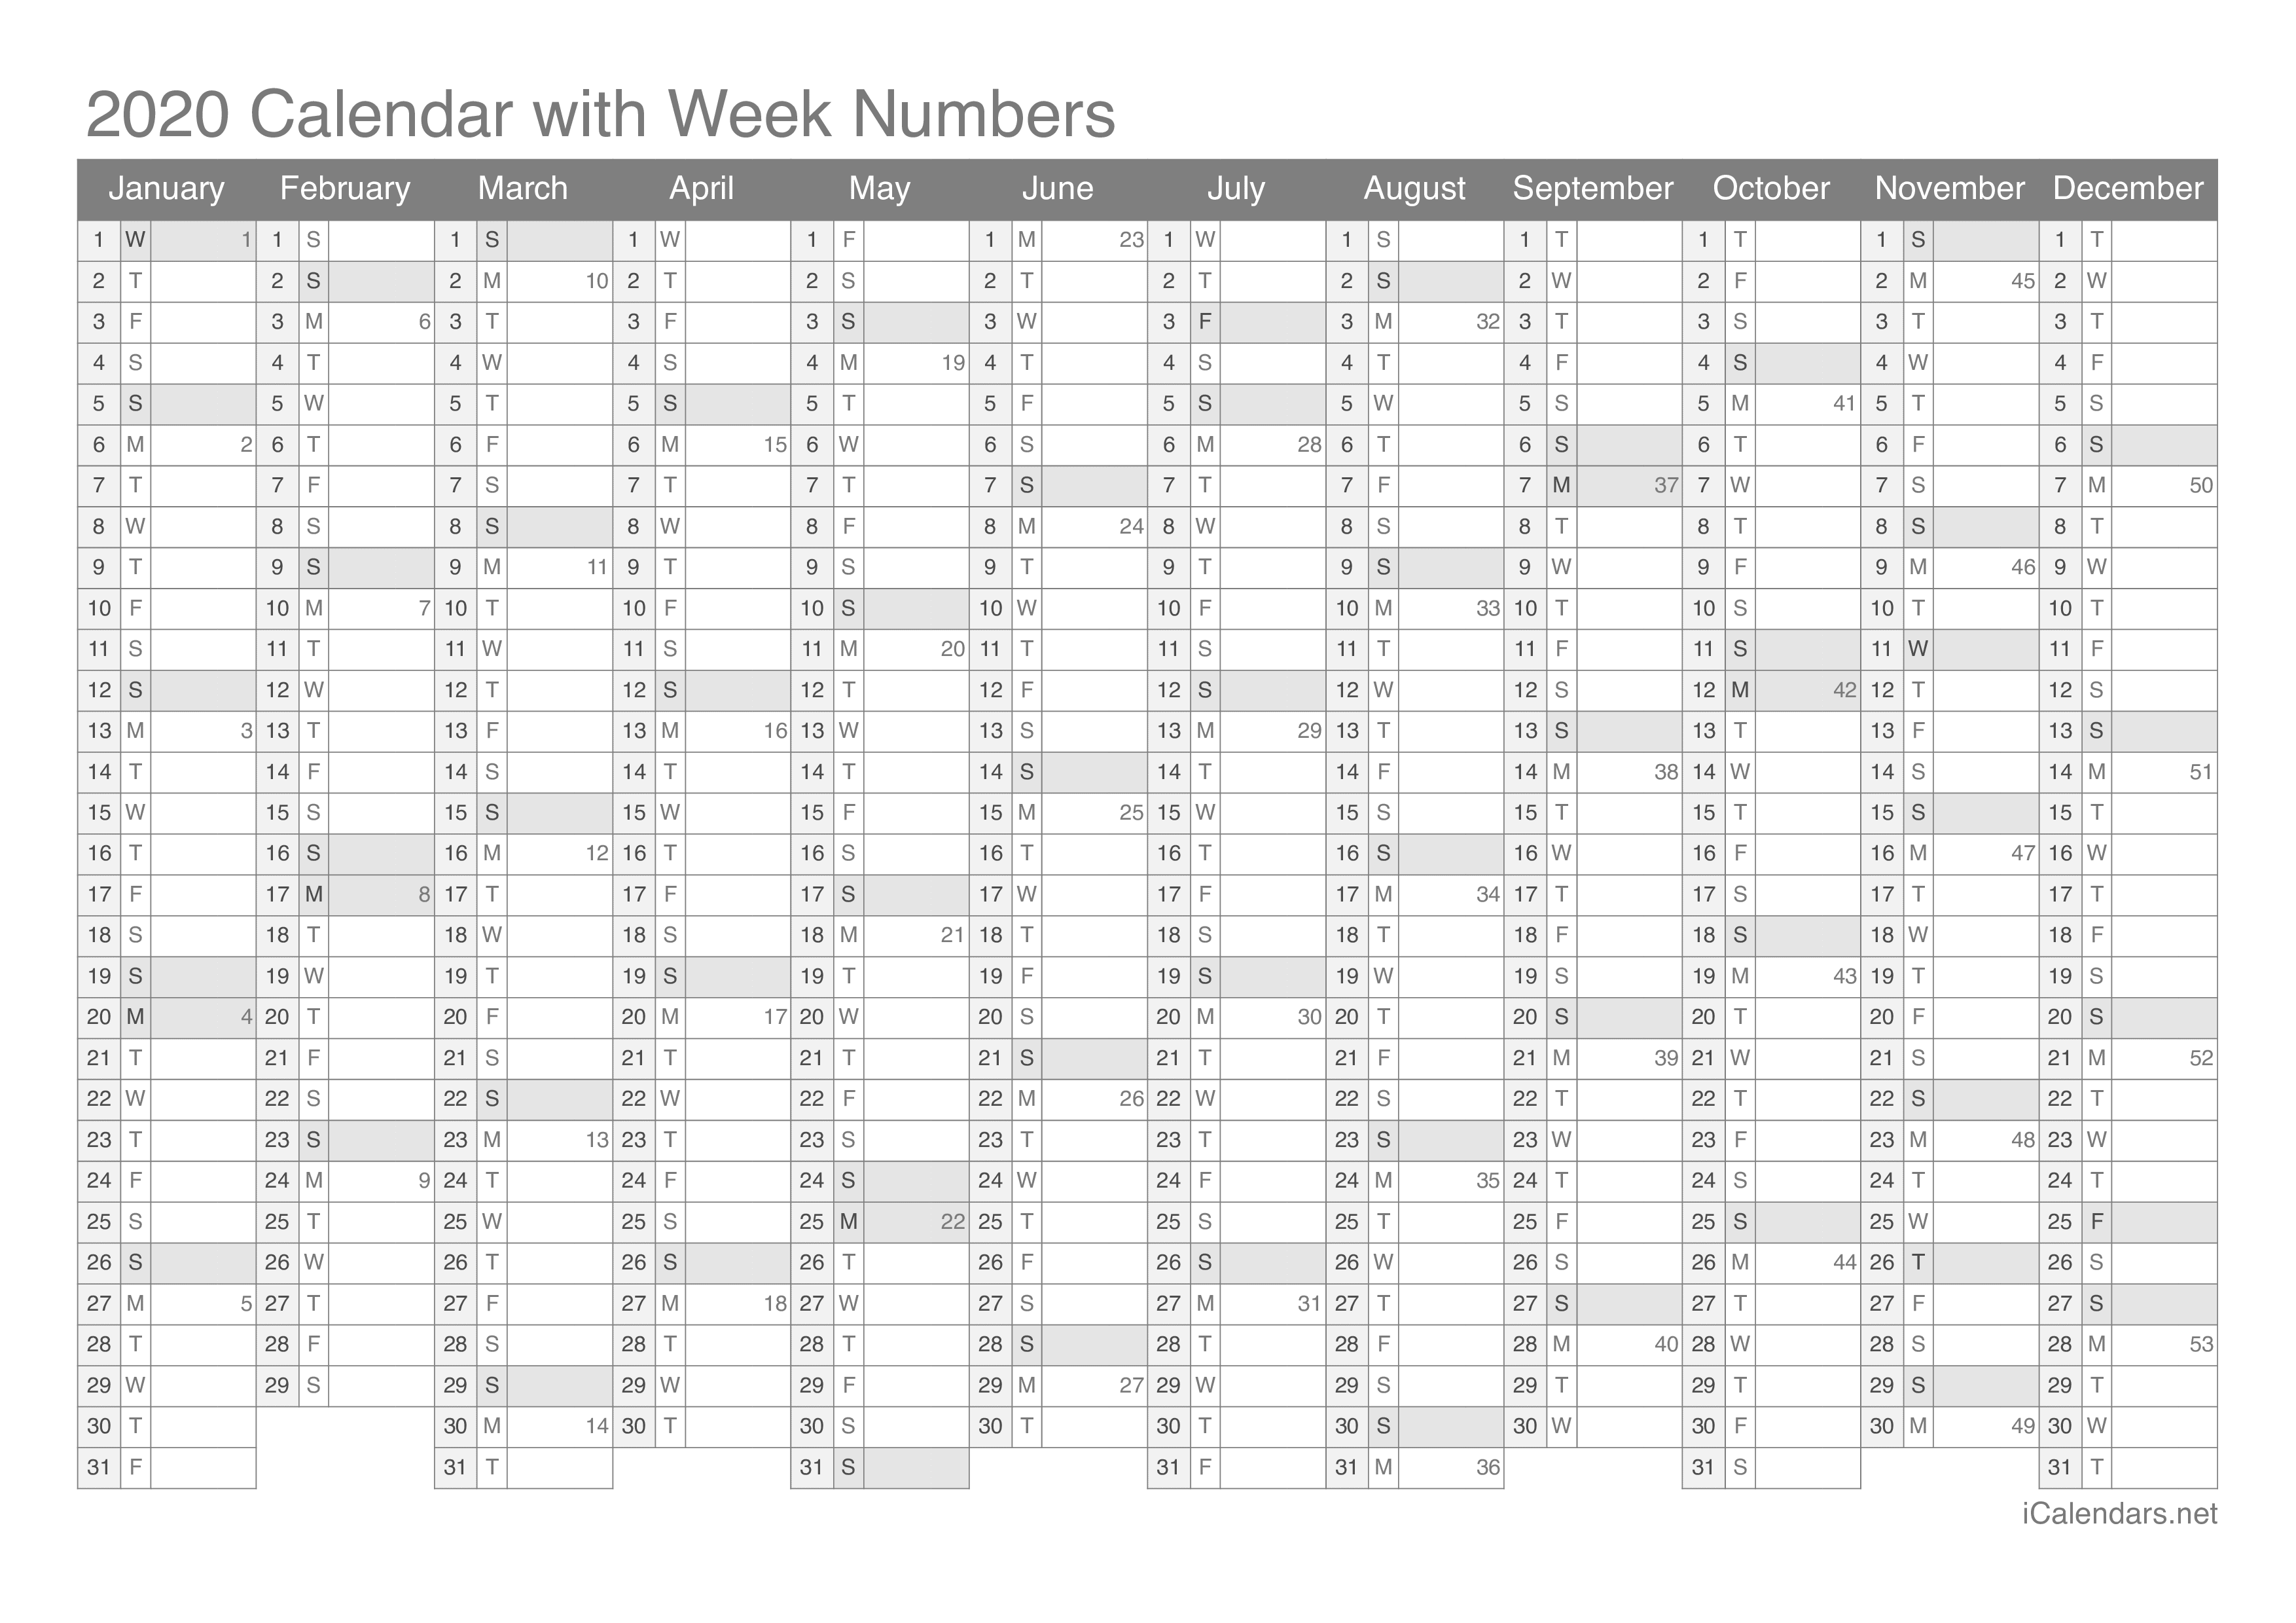 2020 Calendar with week numbers